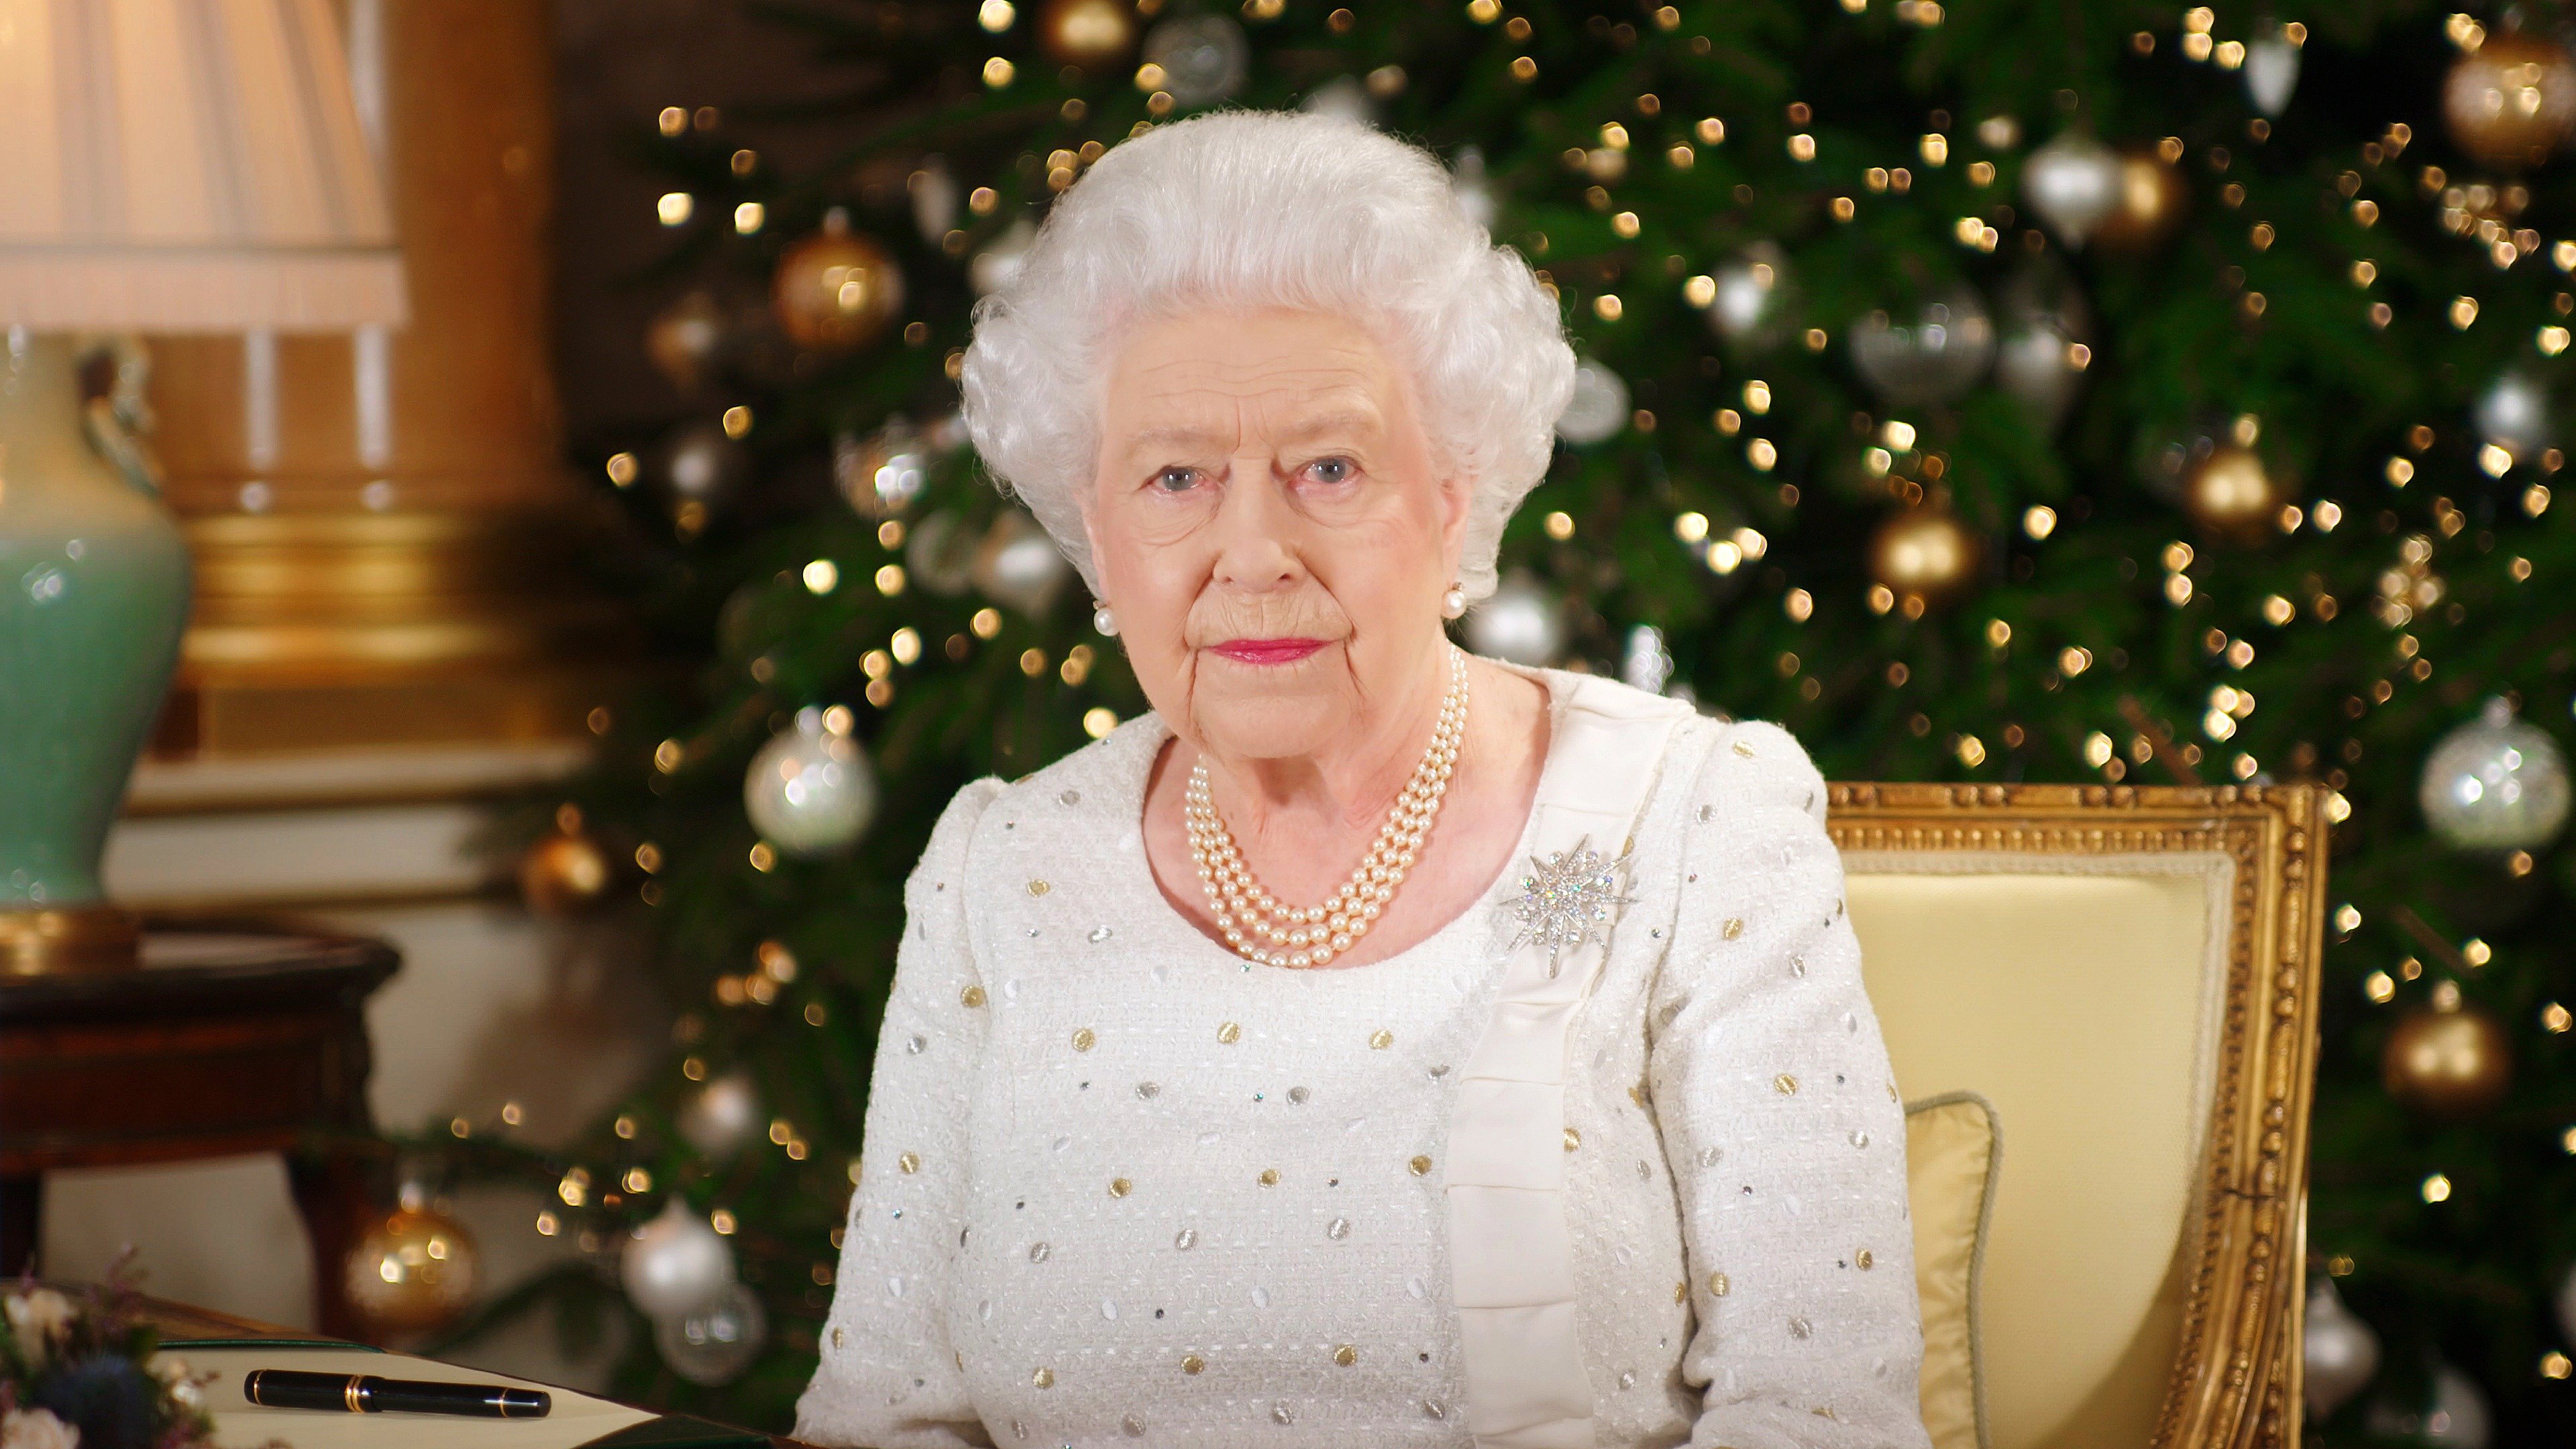 Königin Elizabeth II. sitzt an einem Schreibtisch im Zimmer von 1844 im Buckingham Palace, während sie ihre Weihnachtssendung an das Commonwealth im Buckingham Palace, London, aufzeichnet. | Quelle: Getty Images